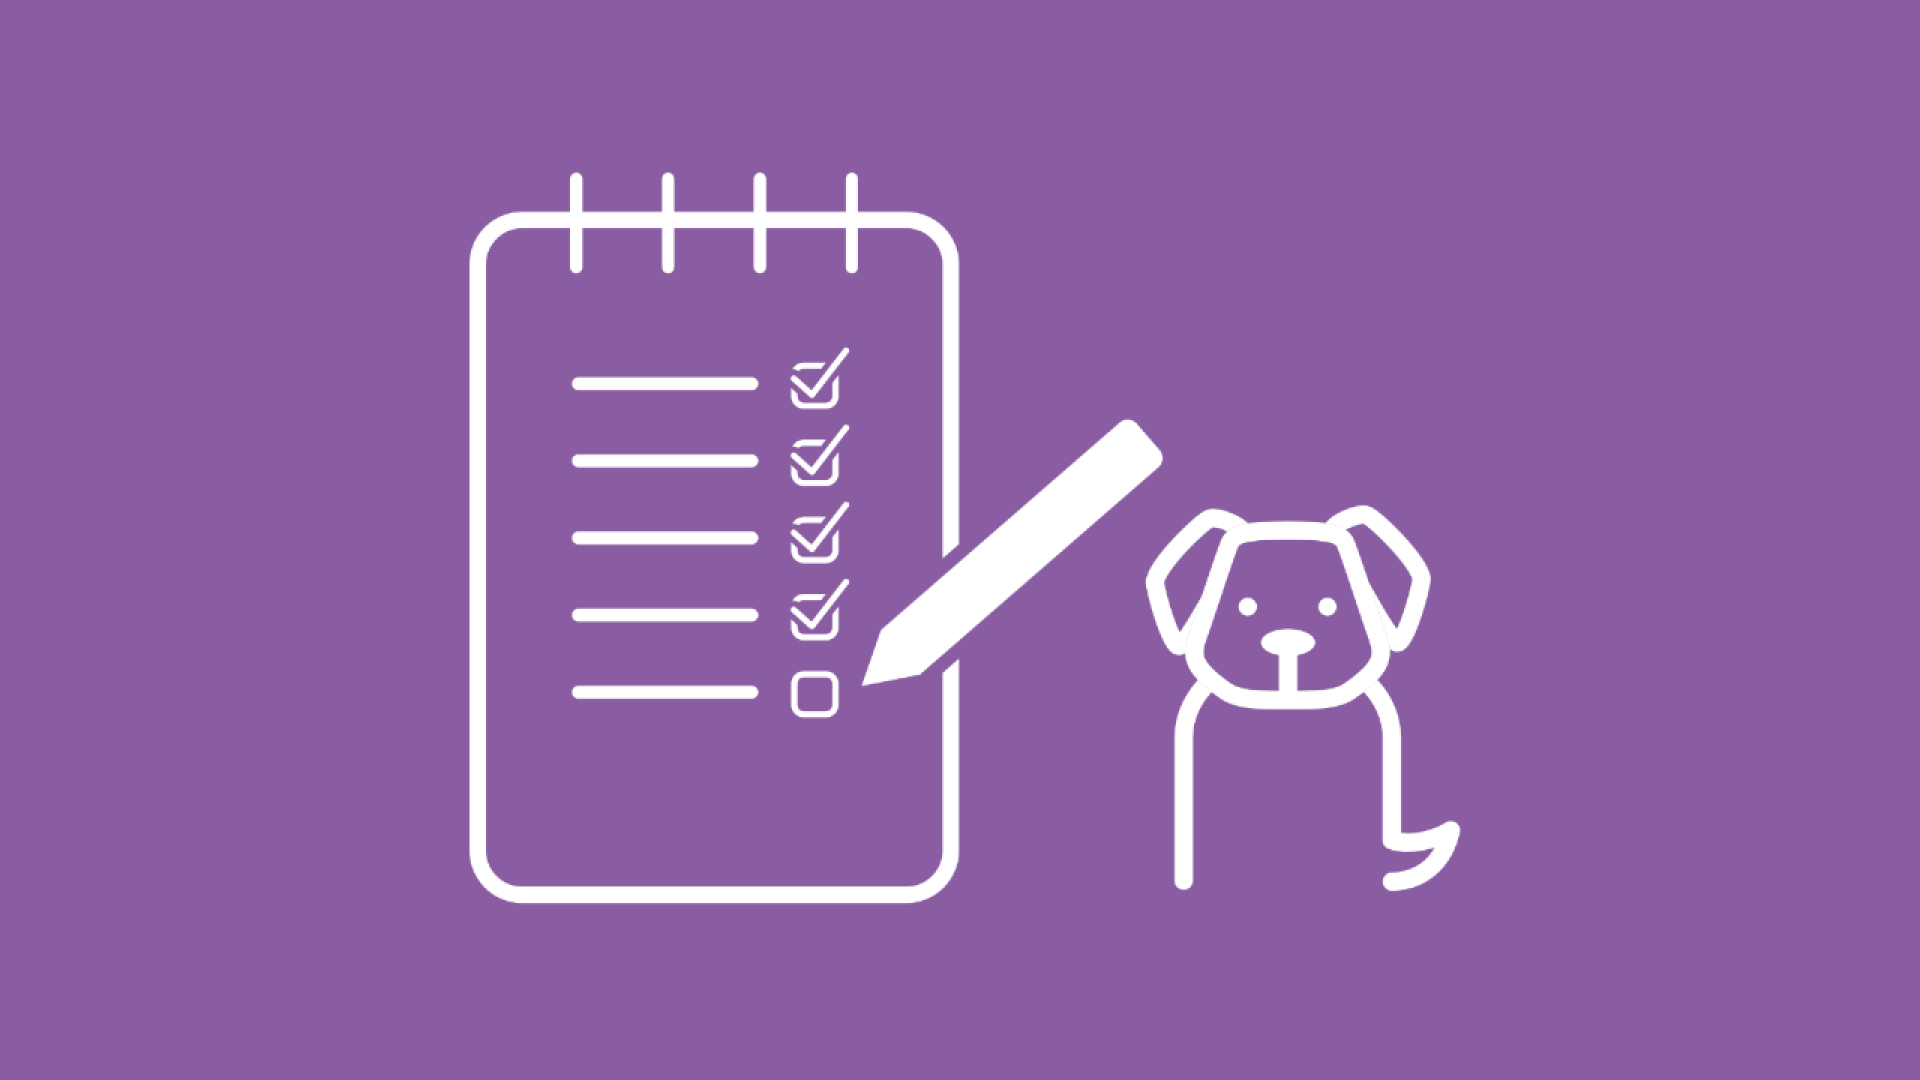 Eine Checkliste symbolisiert die Punkte, auf die es bei der Hundekrankenversicherung ankommt.